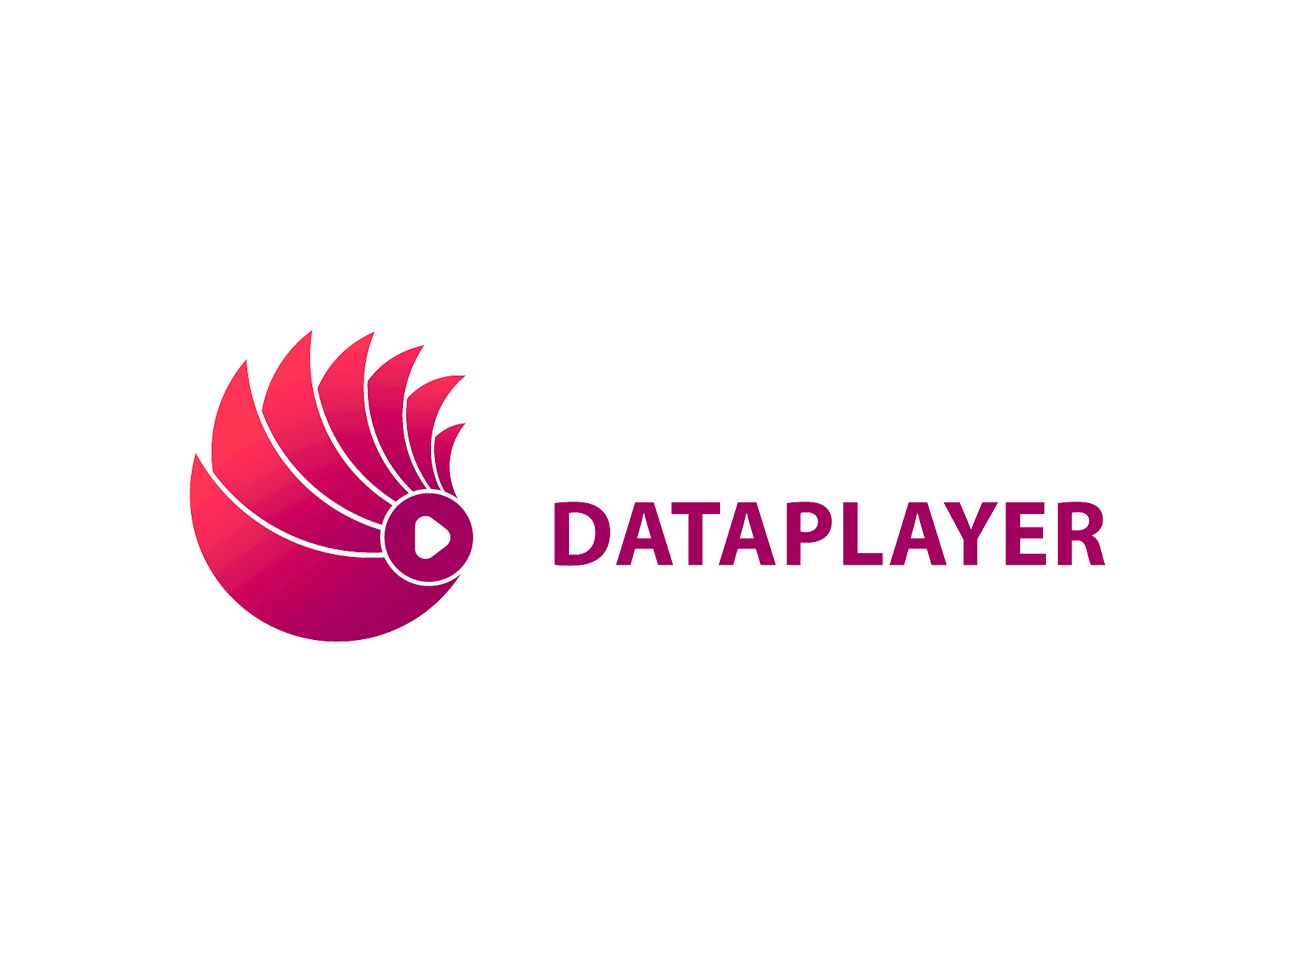 dataplayer logo